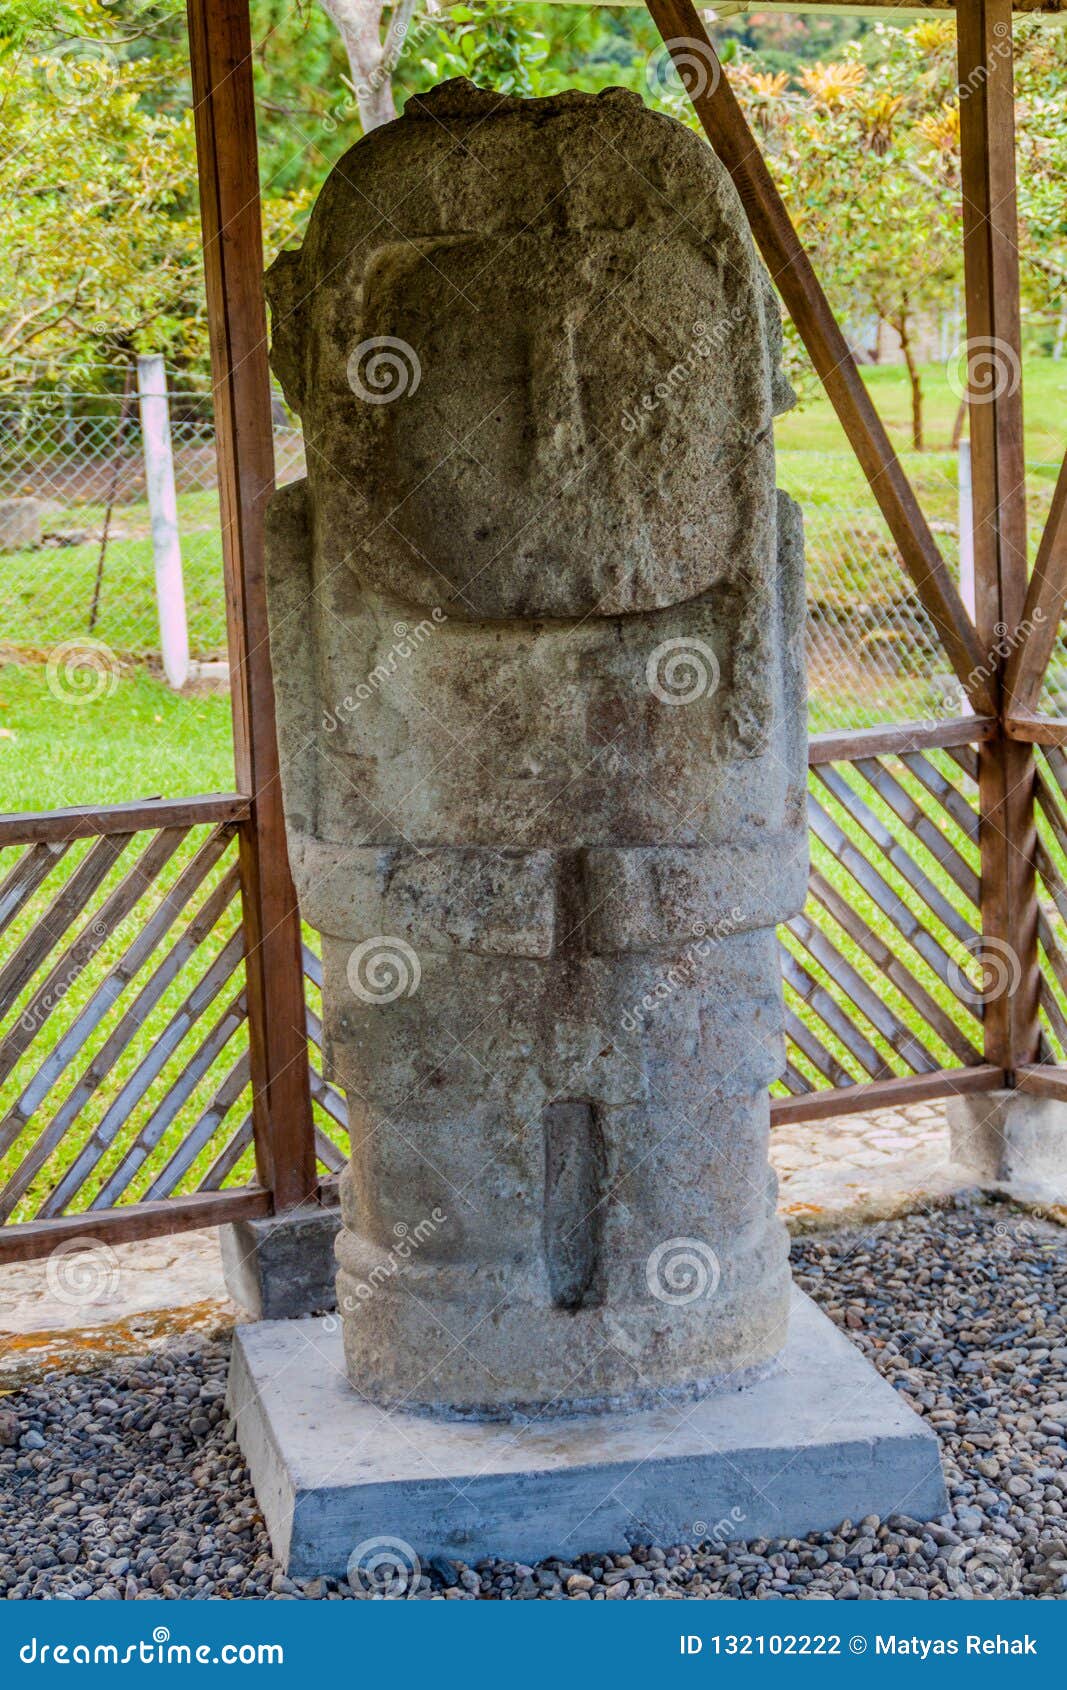 ancient statue at el tablon site in tierradentro